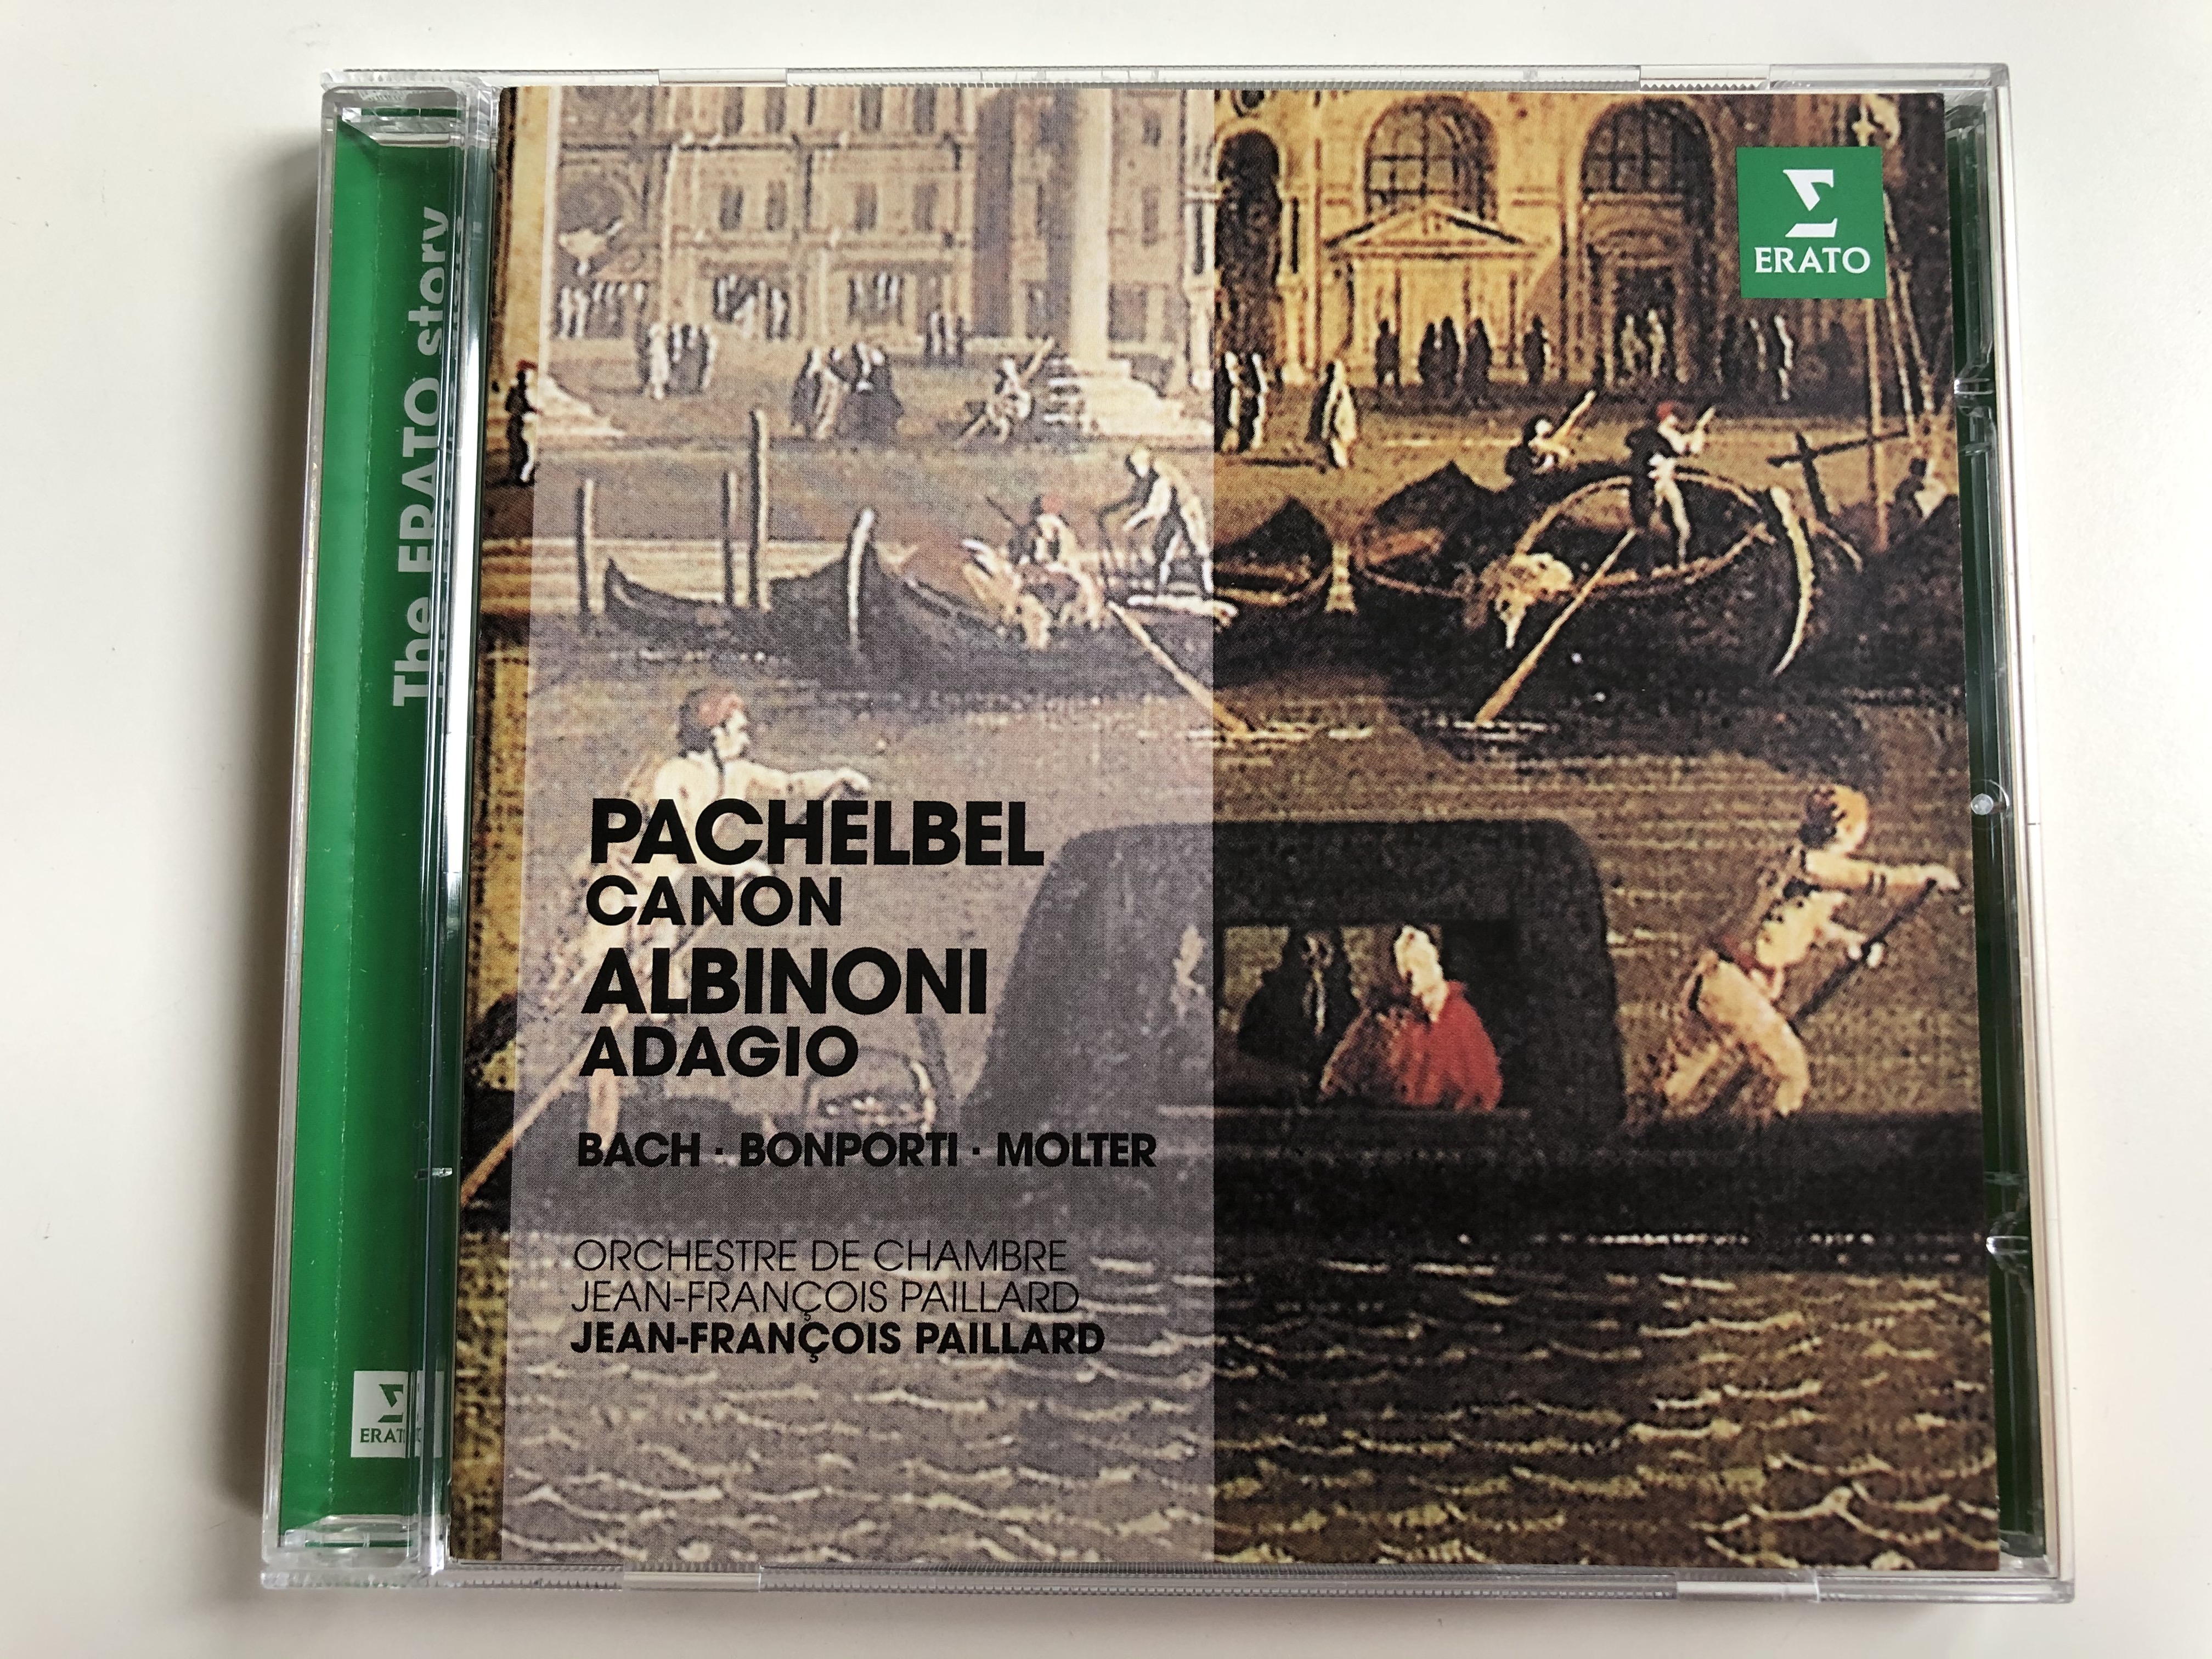 pachelbel-canon-albinoni-adagio-bach-bonporti-molter-orchestre-de-chambre-jean-francois-paillard-erato-audio-cd-2014-0825646335244-1-.jpg